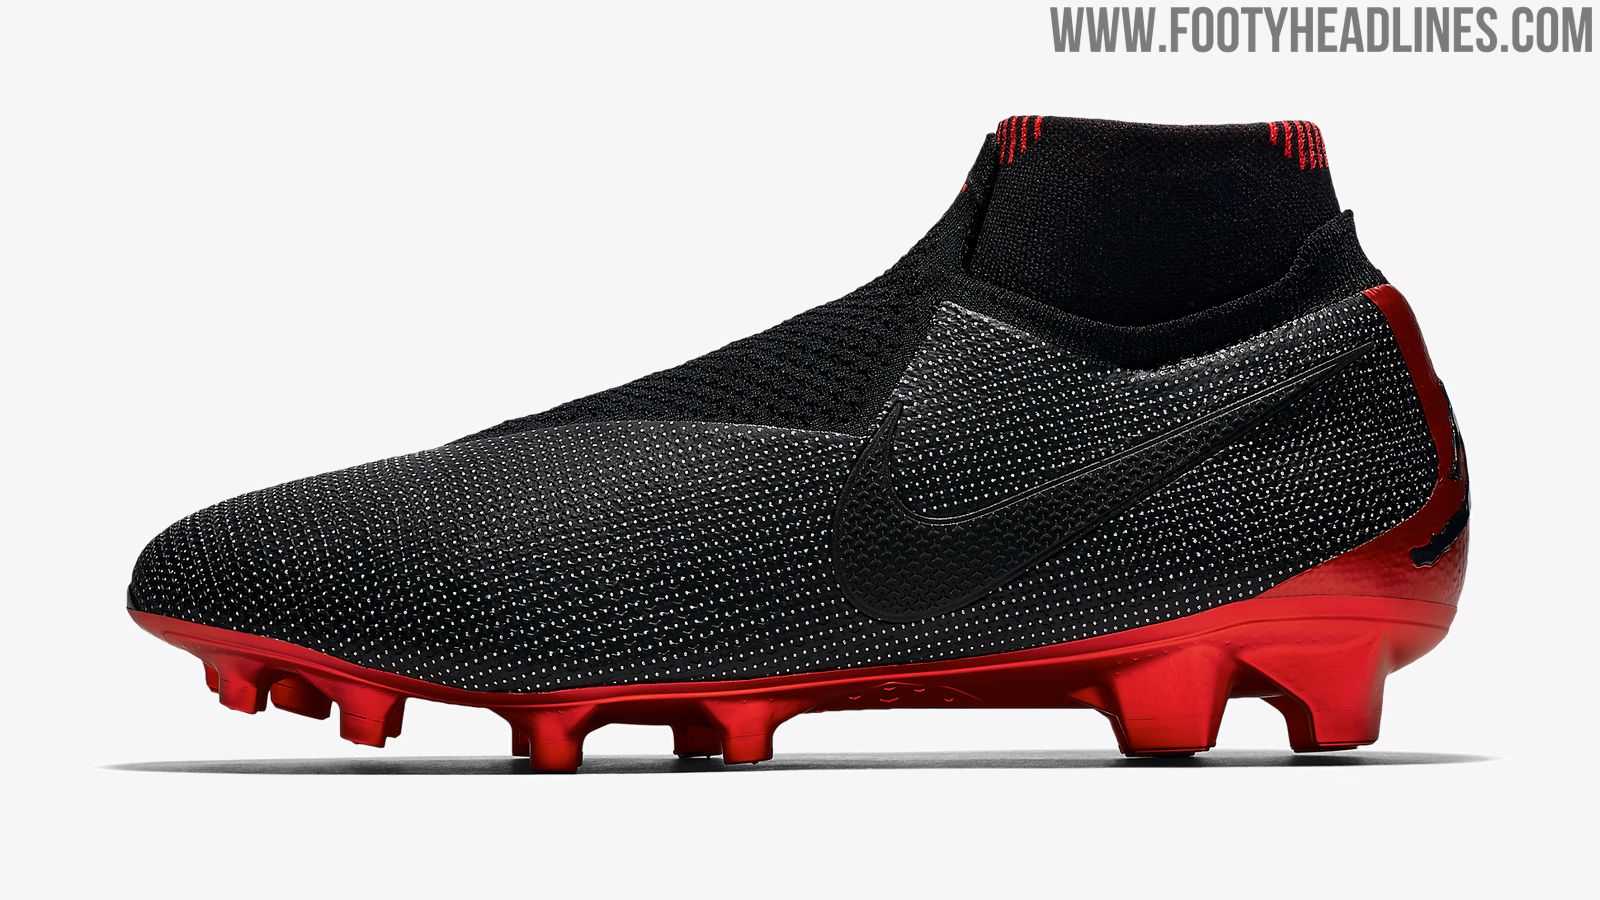 Hueso representante oro Nike x Jordan x PSG Phantom Vision Boots Revealed - Footy Headlines